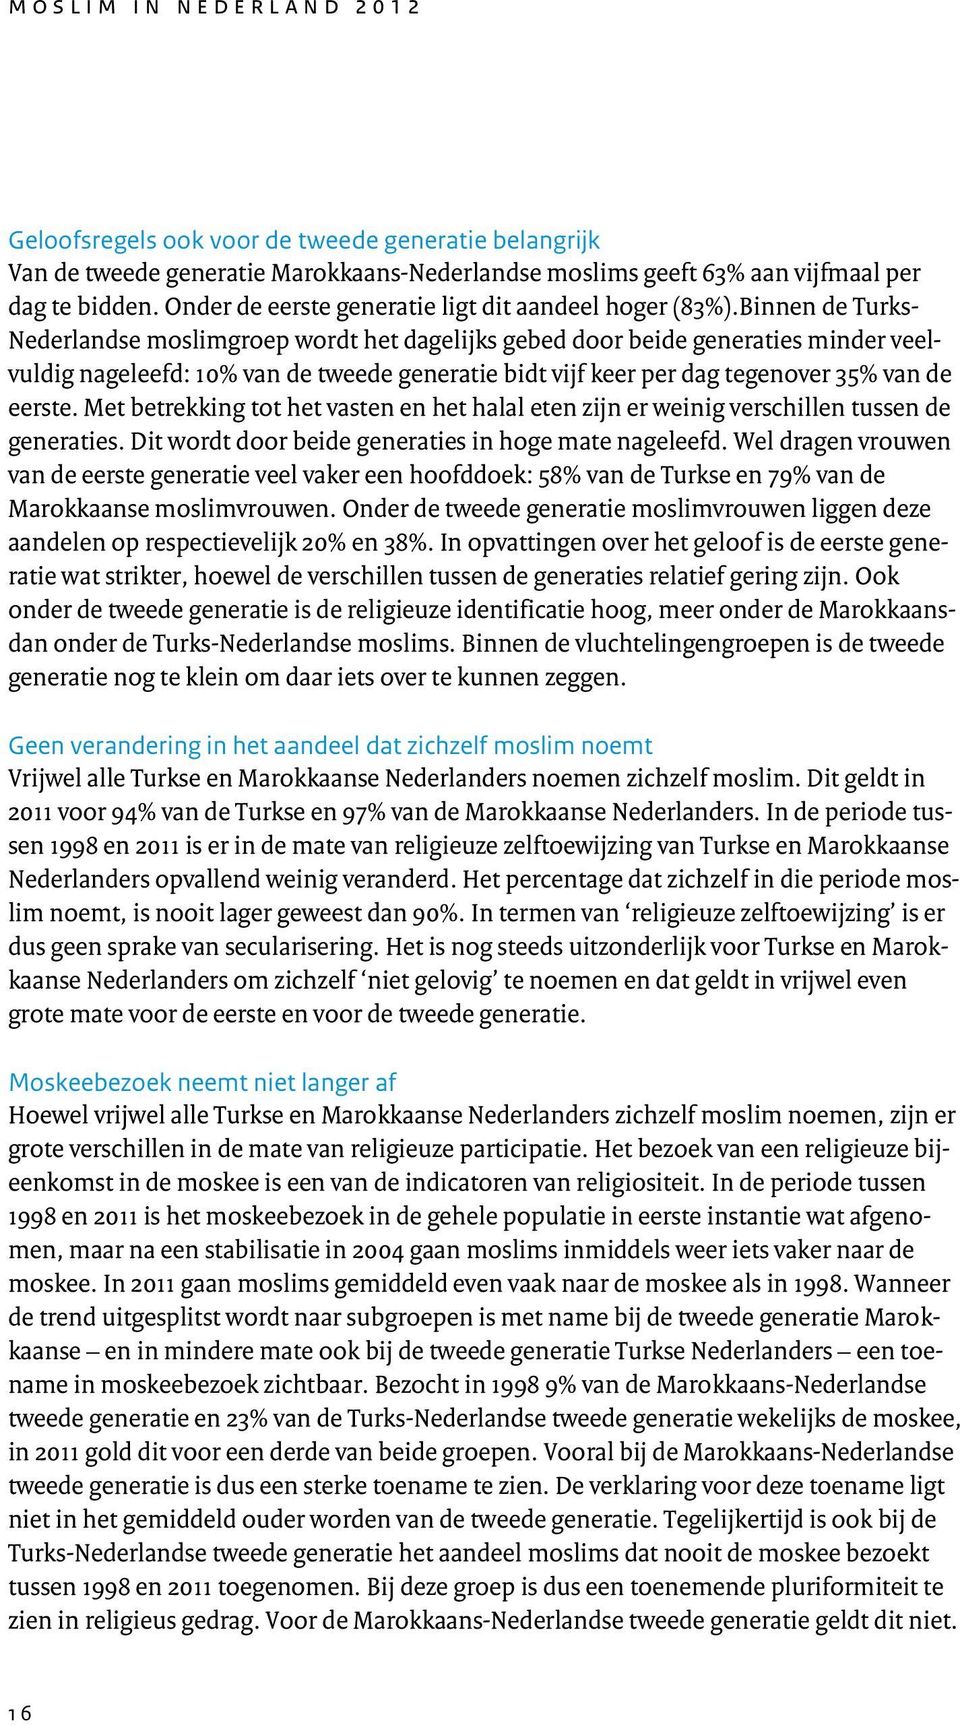 Binnen de Turks- Nederlandse moslimgroep wordt het dagelijks gebed door beide generaties minder veelvuldig nageleefd: 10% van de tweede generatie bidt vijf keer per dag tegenover 35% van de eerste.